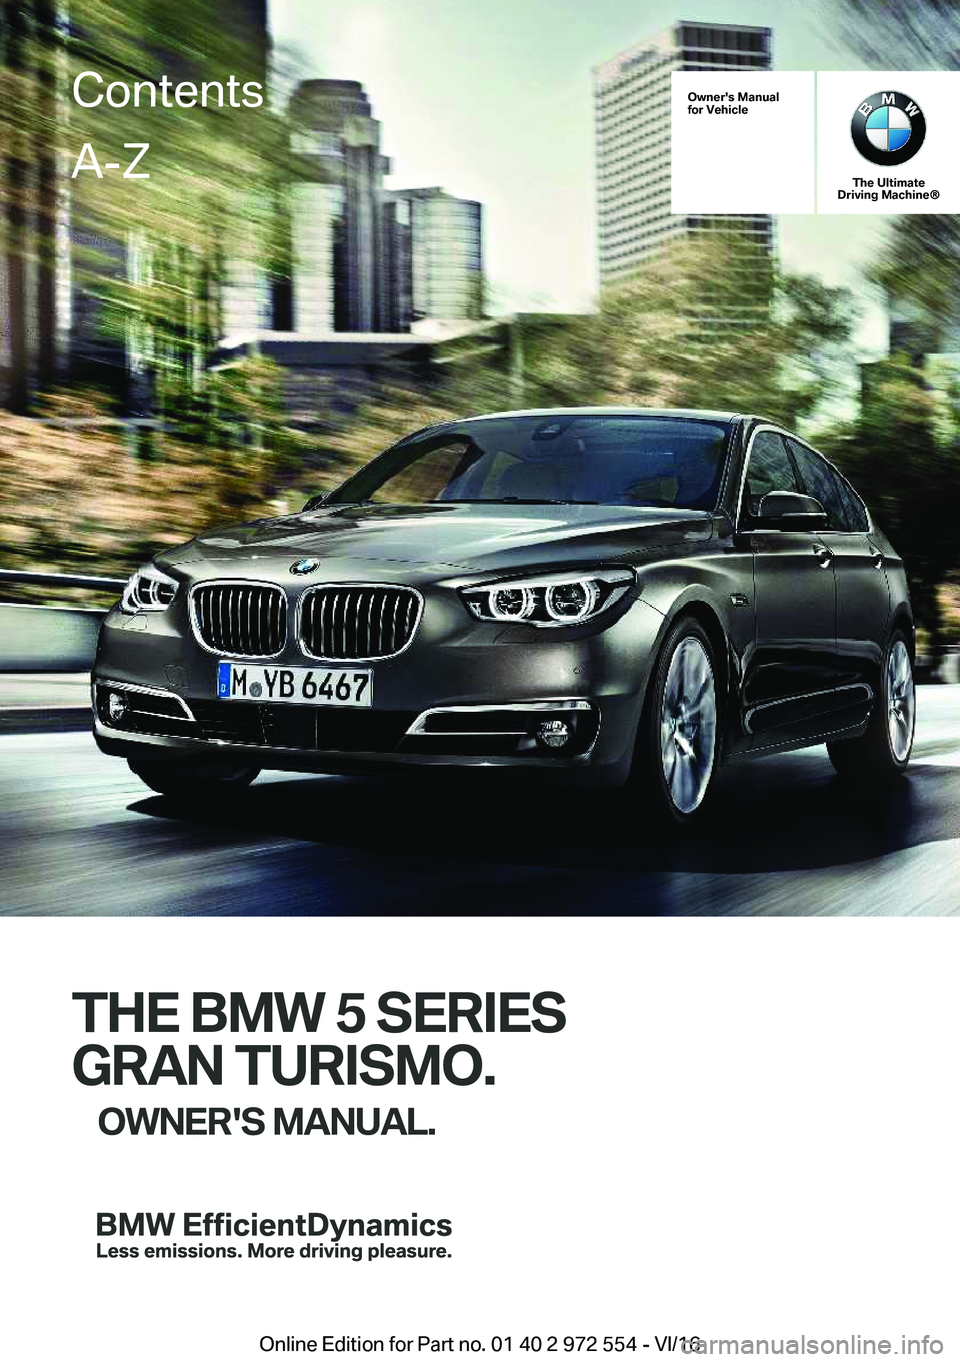 BMW 5 SERIES GRAN TURISMO 2017  Owners Manual �O�w�n�e�r�'�s��M�a�n�u�a�l
�f�o�r��V�e�h�i�c�l�e
�T�h�e��U�l�t�i�m�a�t�e
�D�r�i�v�i�n�g��M�a�c�h�i�n�e�n
�T�H�E��B�M�W��5��S�E�R�I�E�S
�G�R�A�N��T�U�R�I�S�M�O�. �O�W�N�E�R�'�S��M�A�N